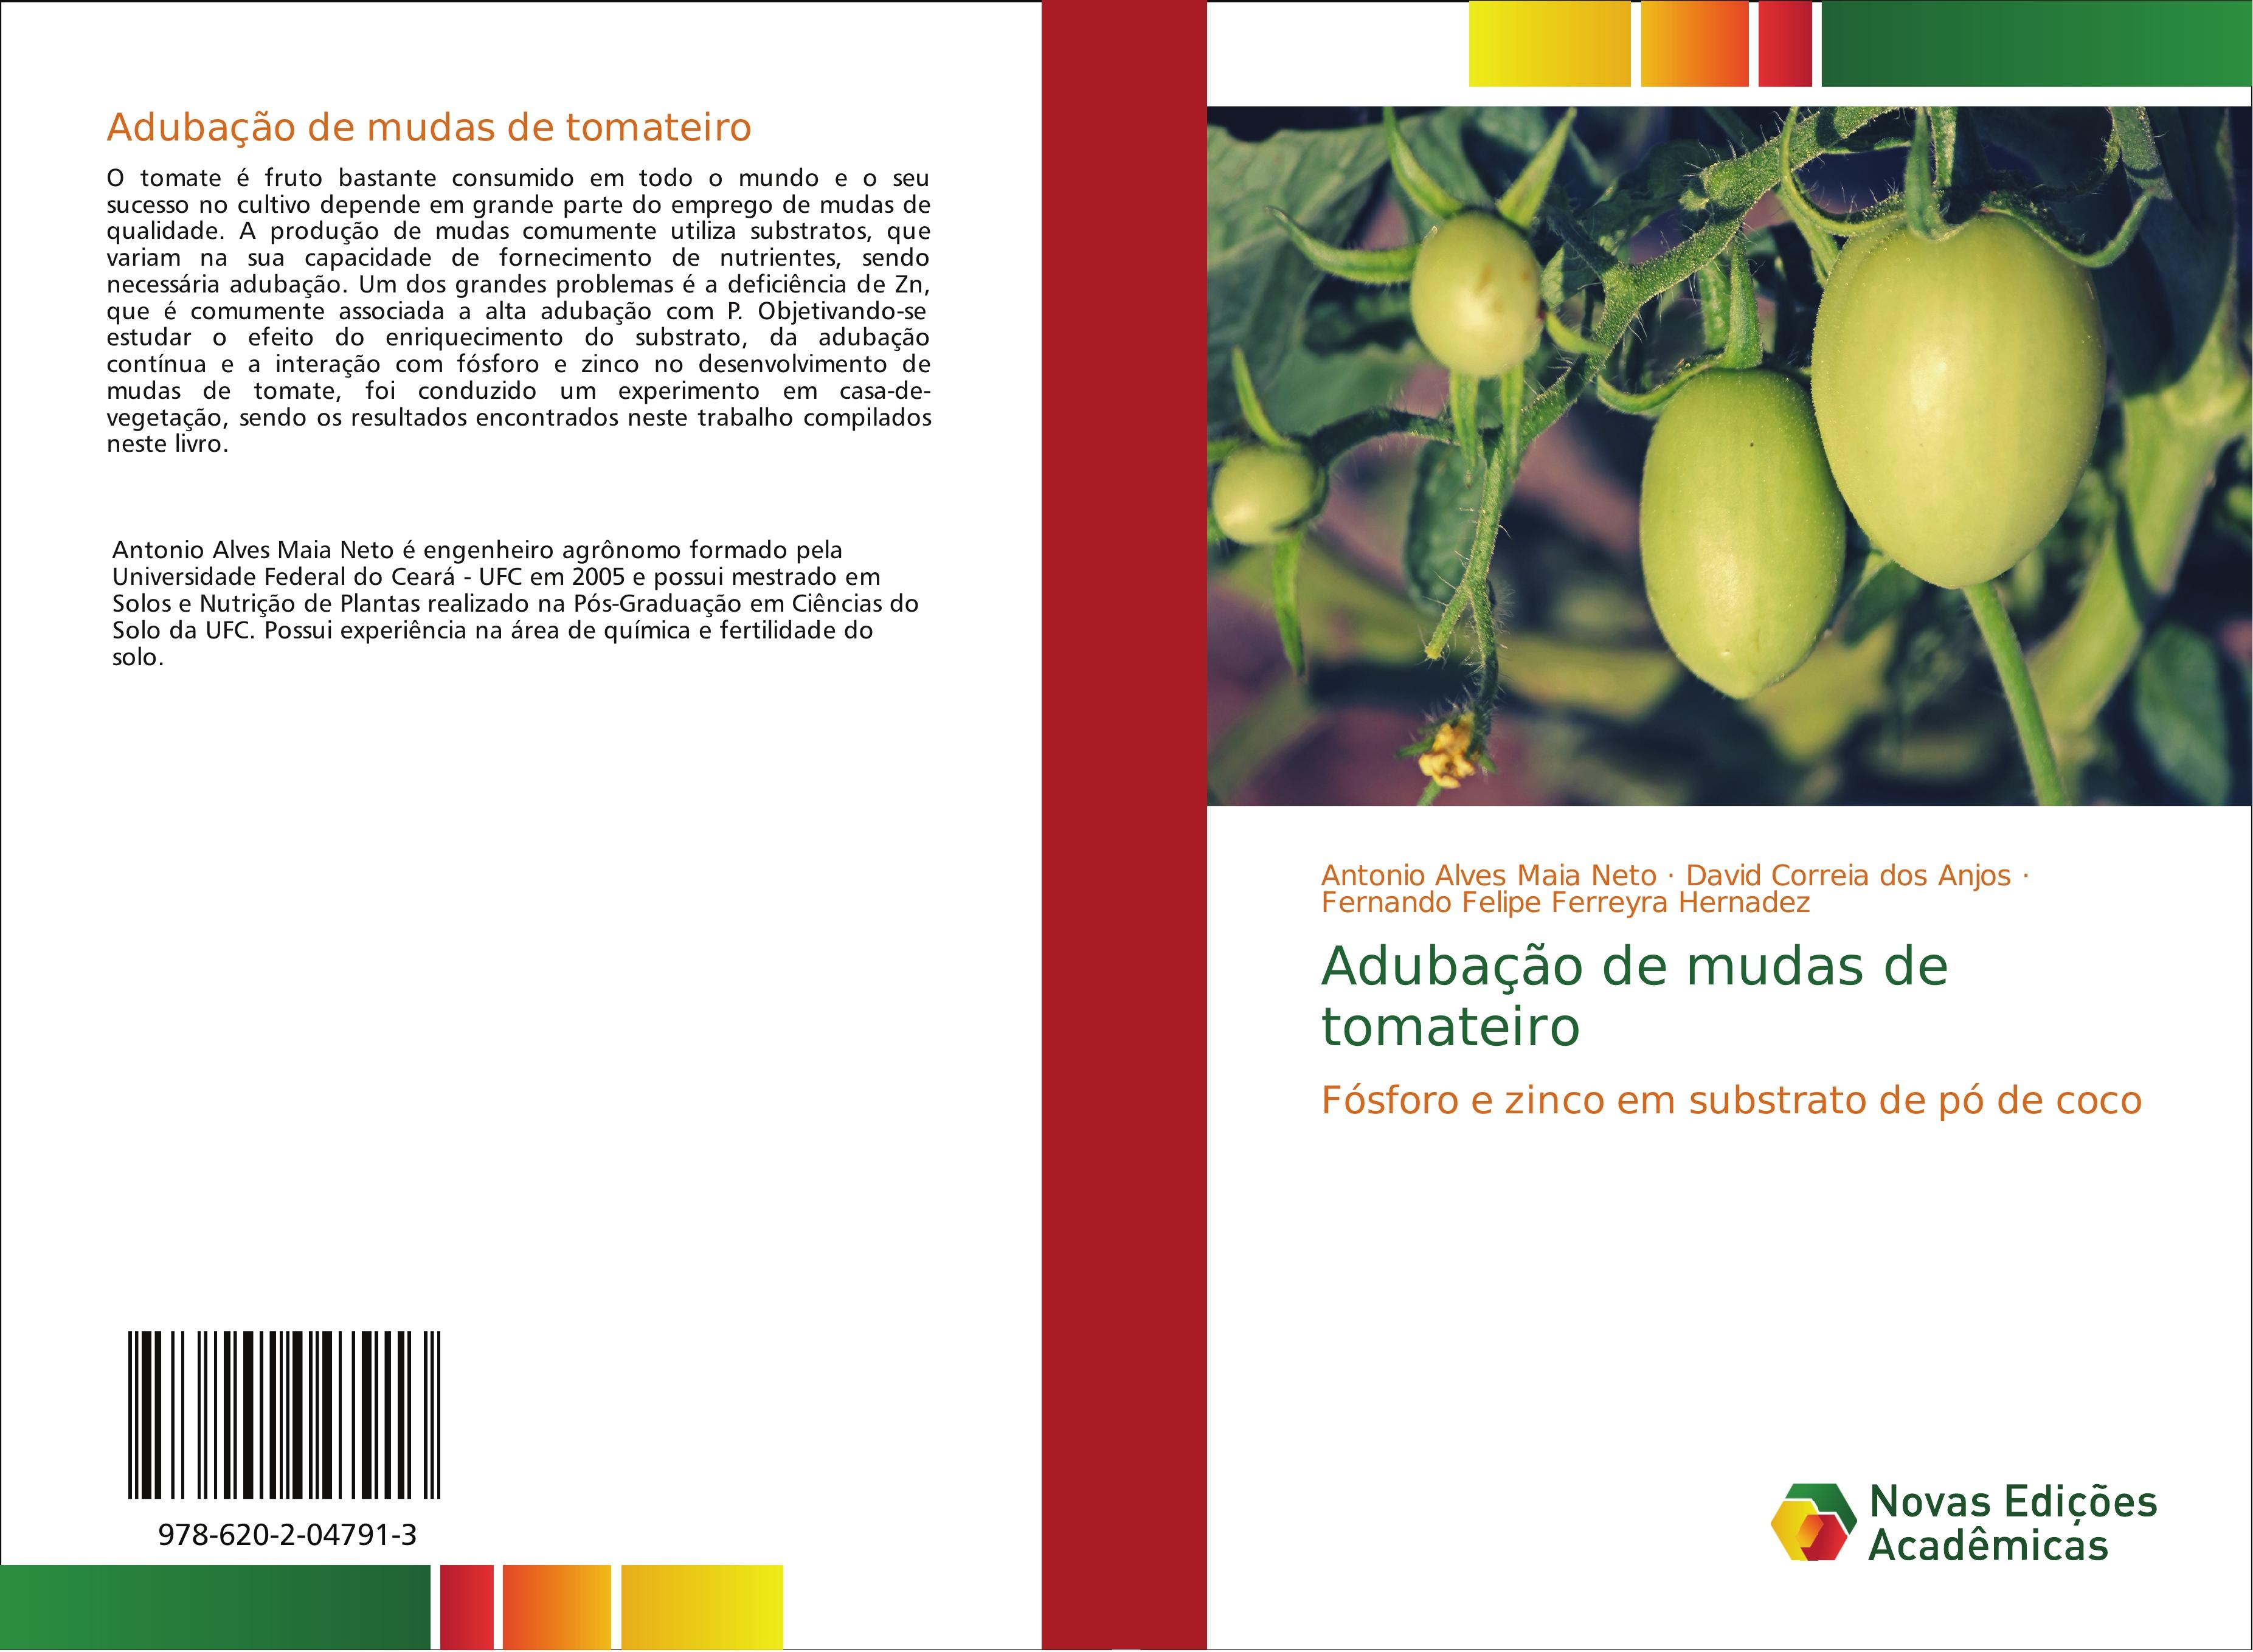 Adubação de mudas de tomateiro - Antonio Alves Maia Neto David Correia dos Anjos Fernando Felipe Ferreyra Hernadez